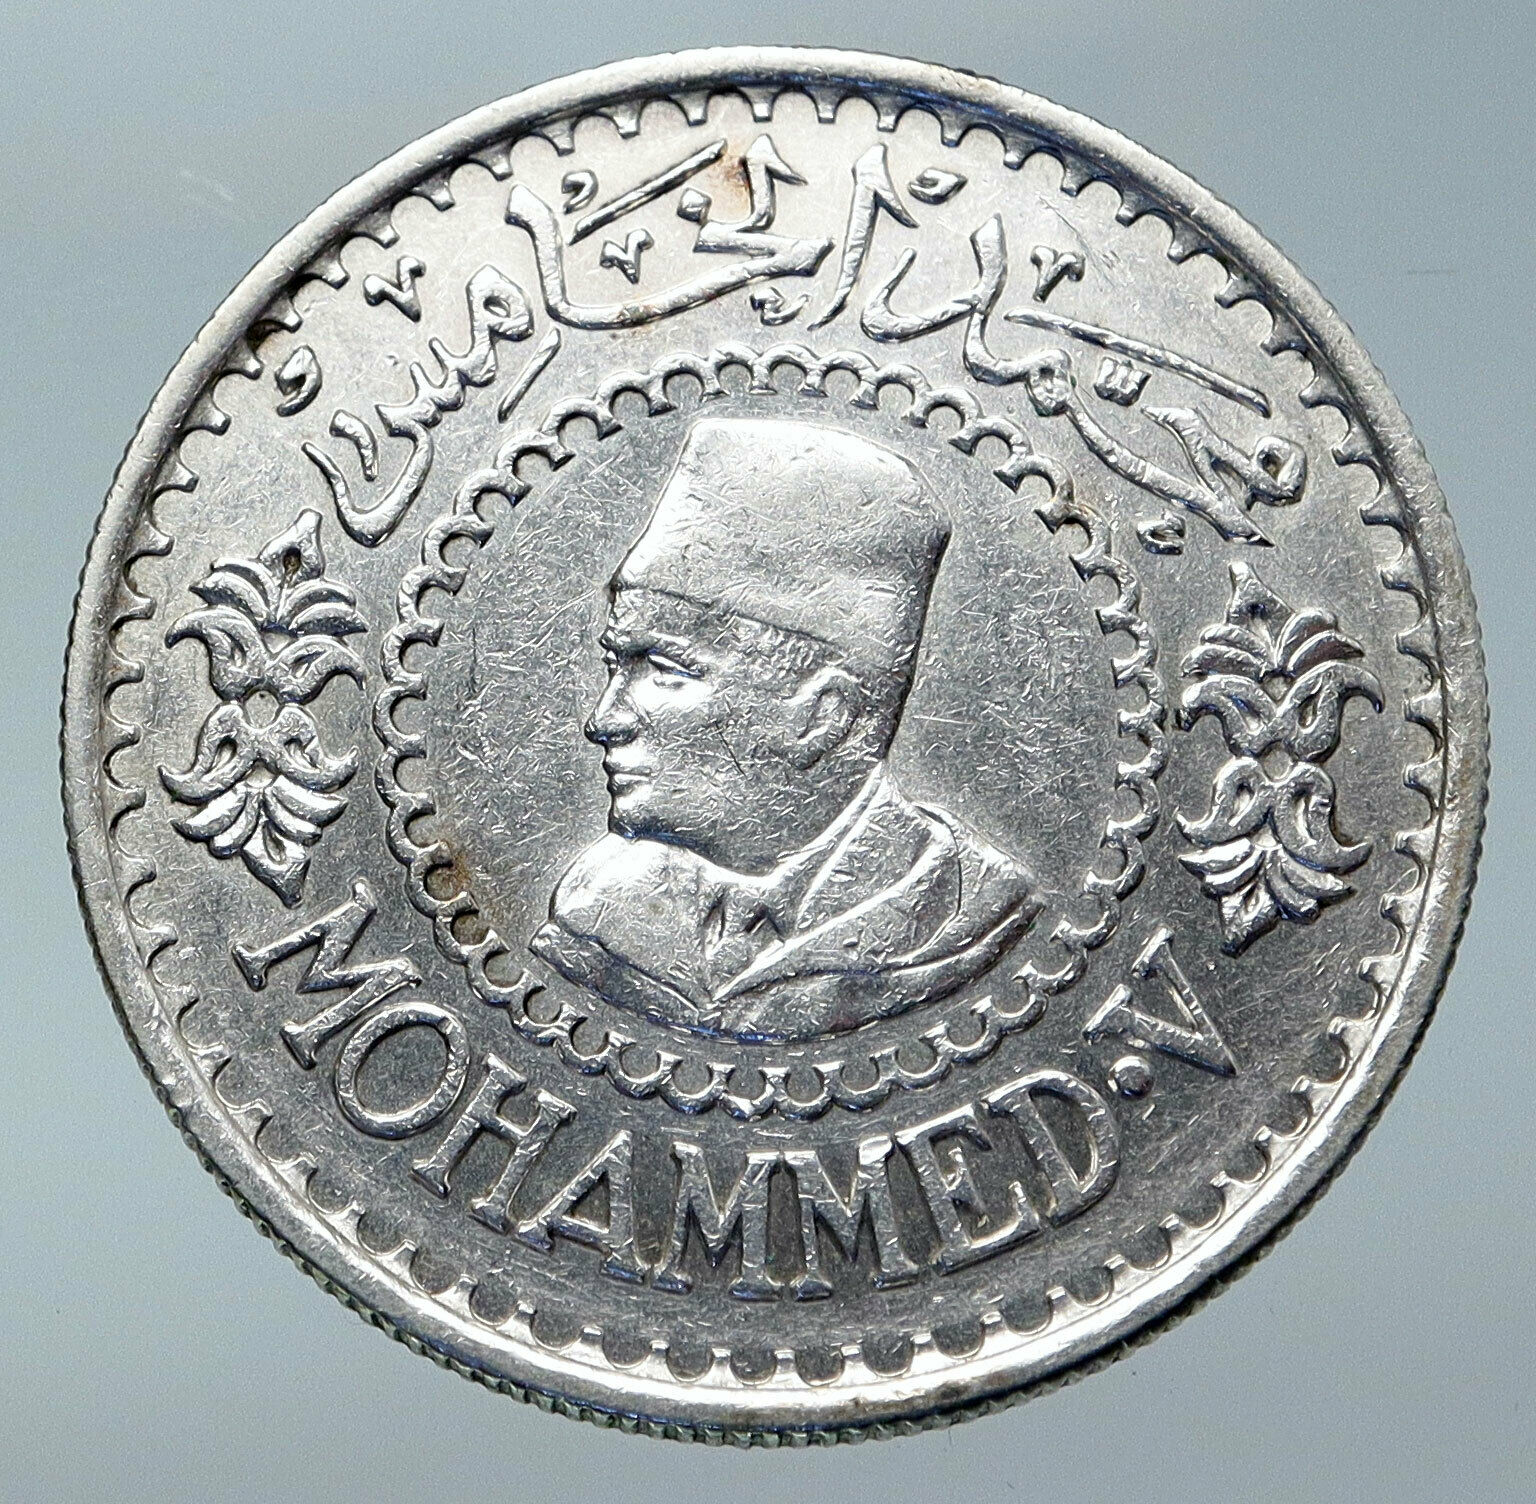 1956 MOROCCO King Mohammed V Crown Star VINTAGE OLD Silver 500 Franc Coin i85928